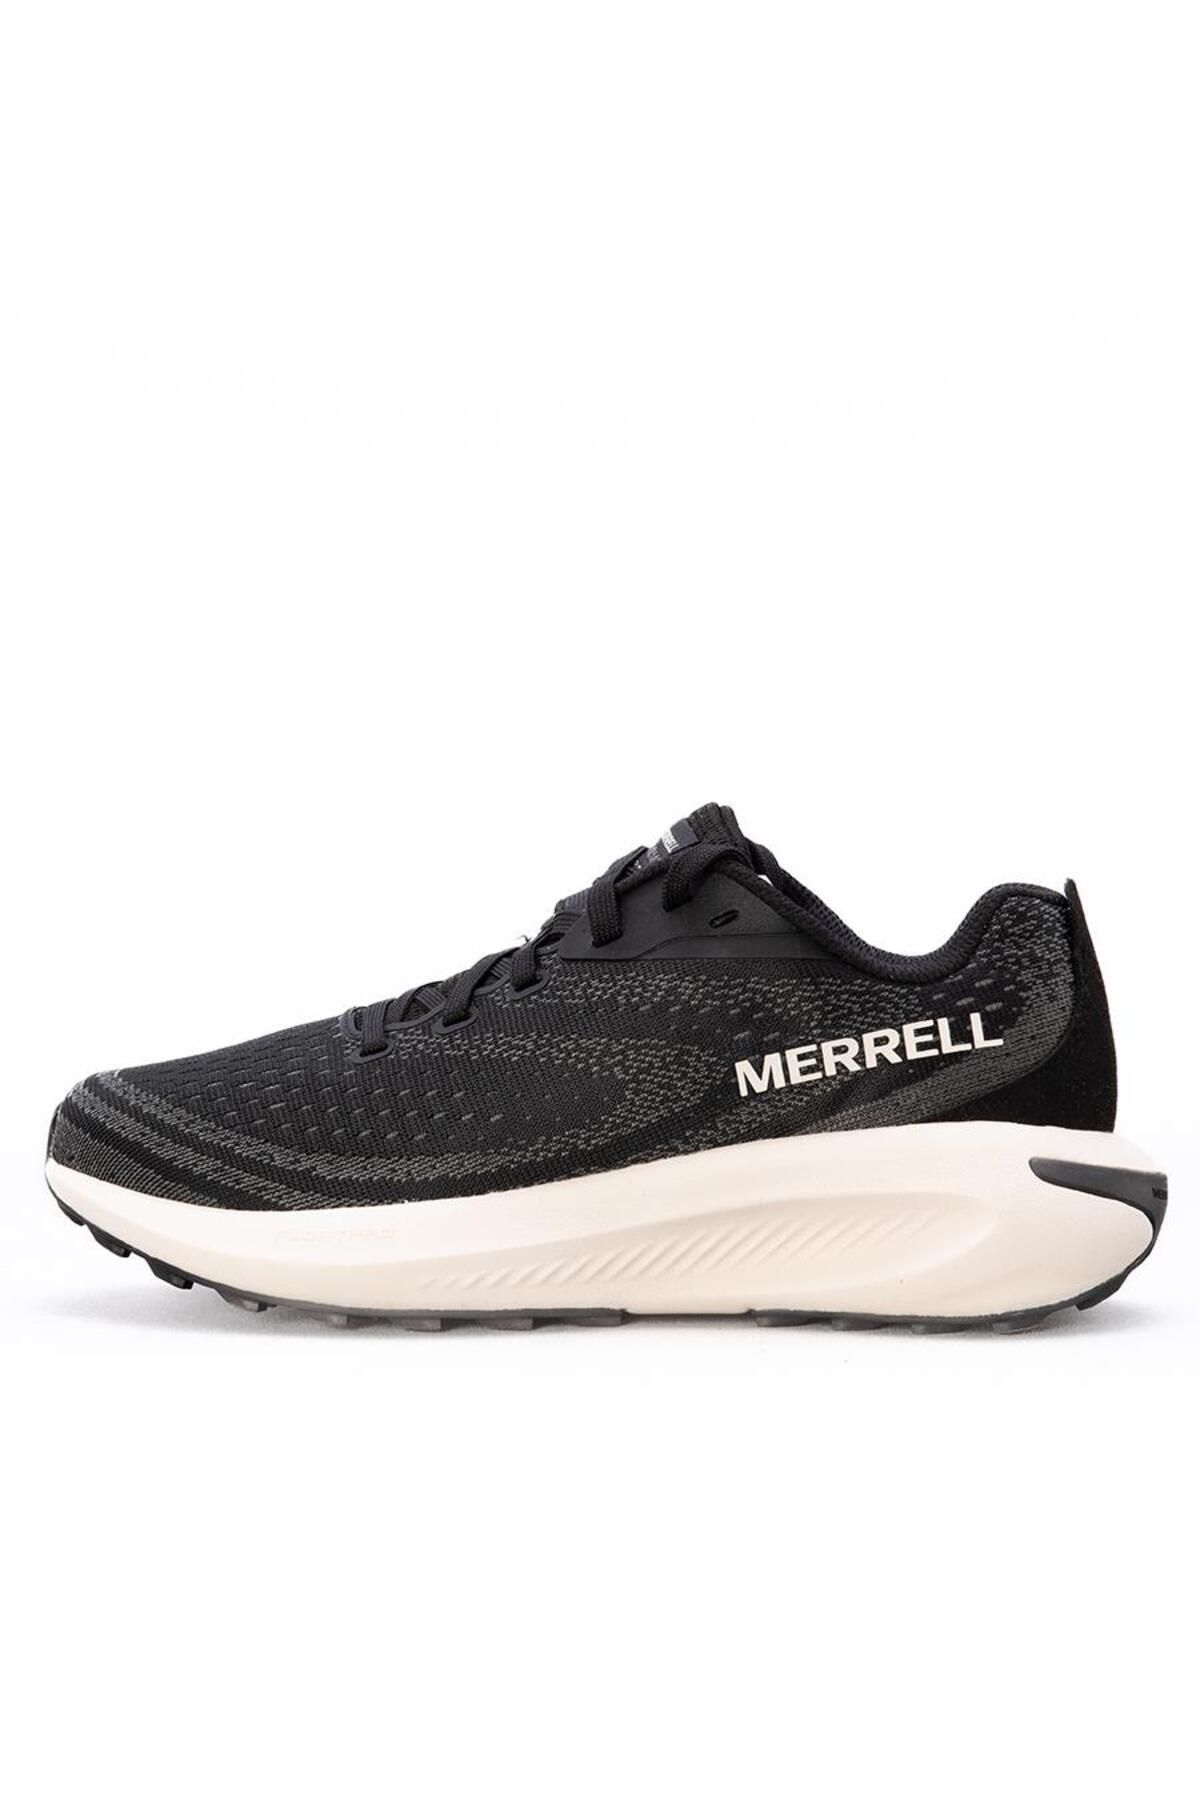 Merrell Morphlıte Kadın Spor Ayakkabı J068132